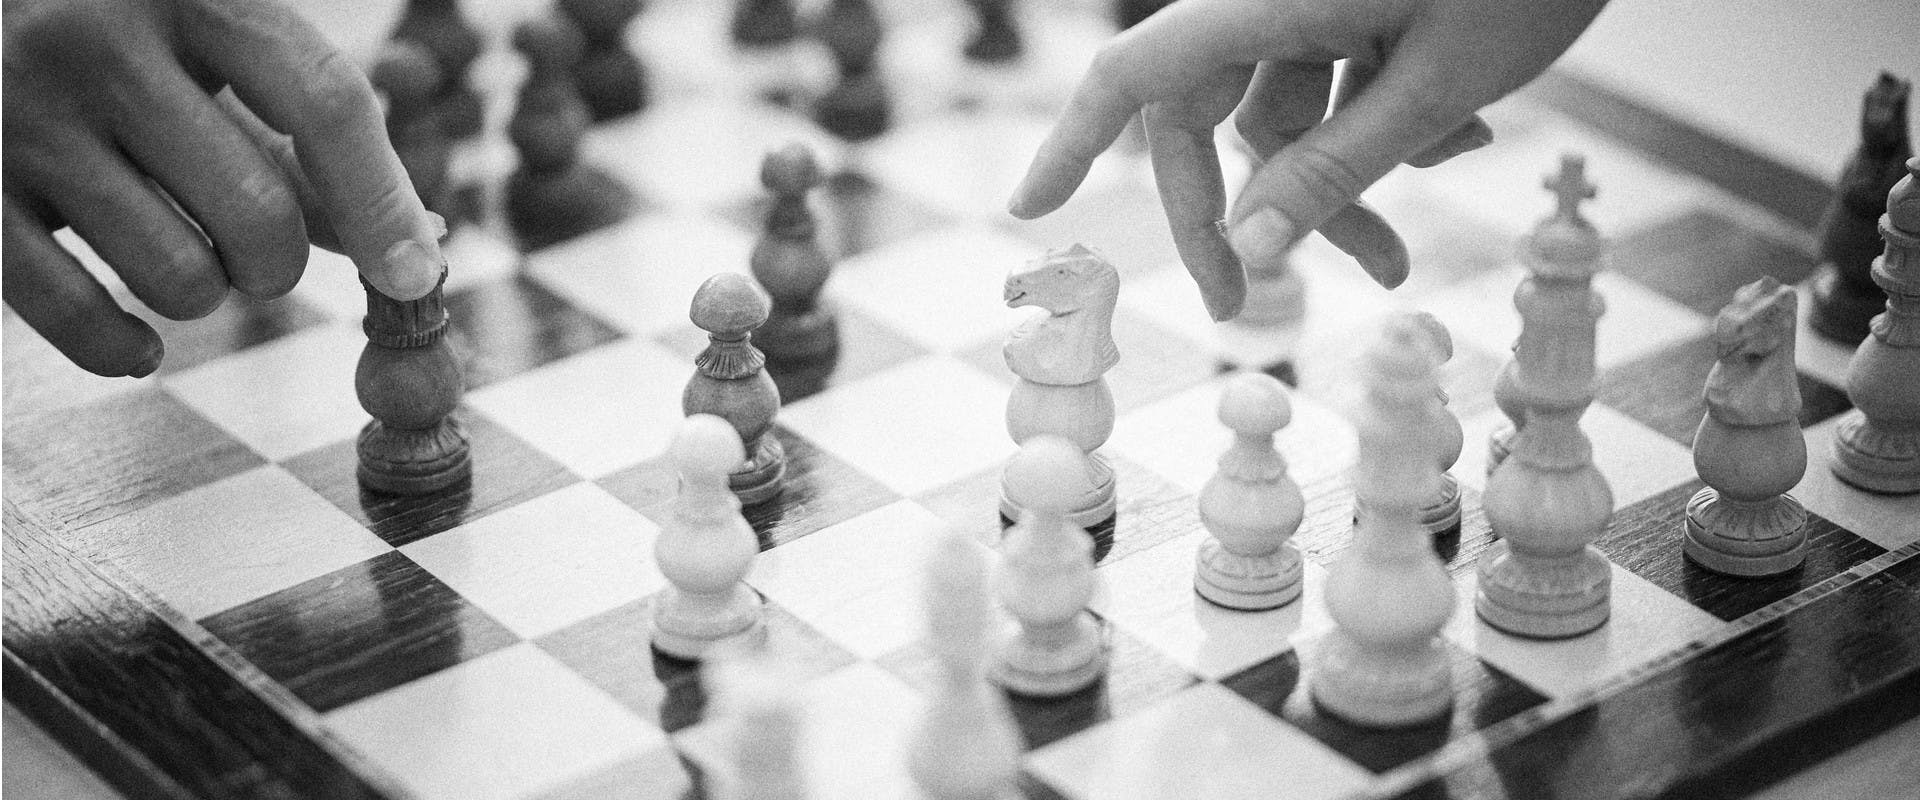 Bild zu den Leistungen Familienrecht, Hände beim Schachspiel